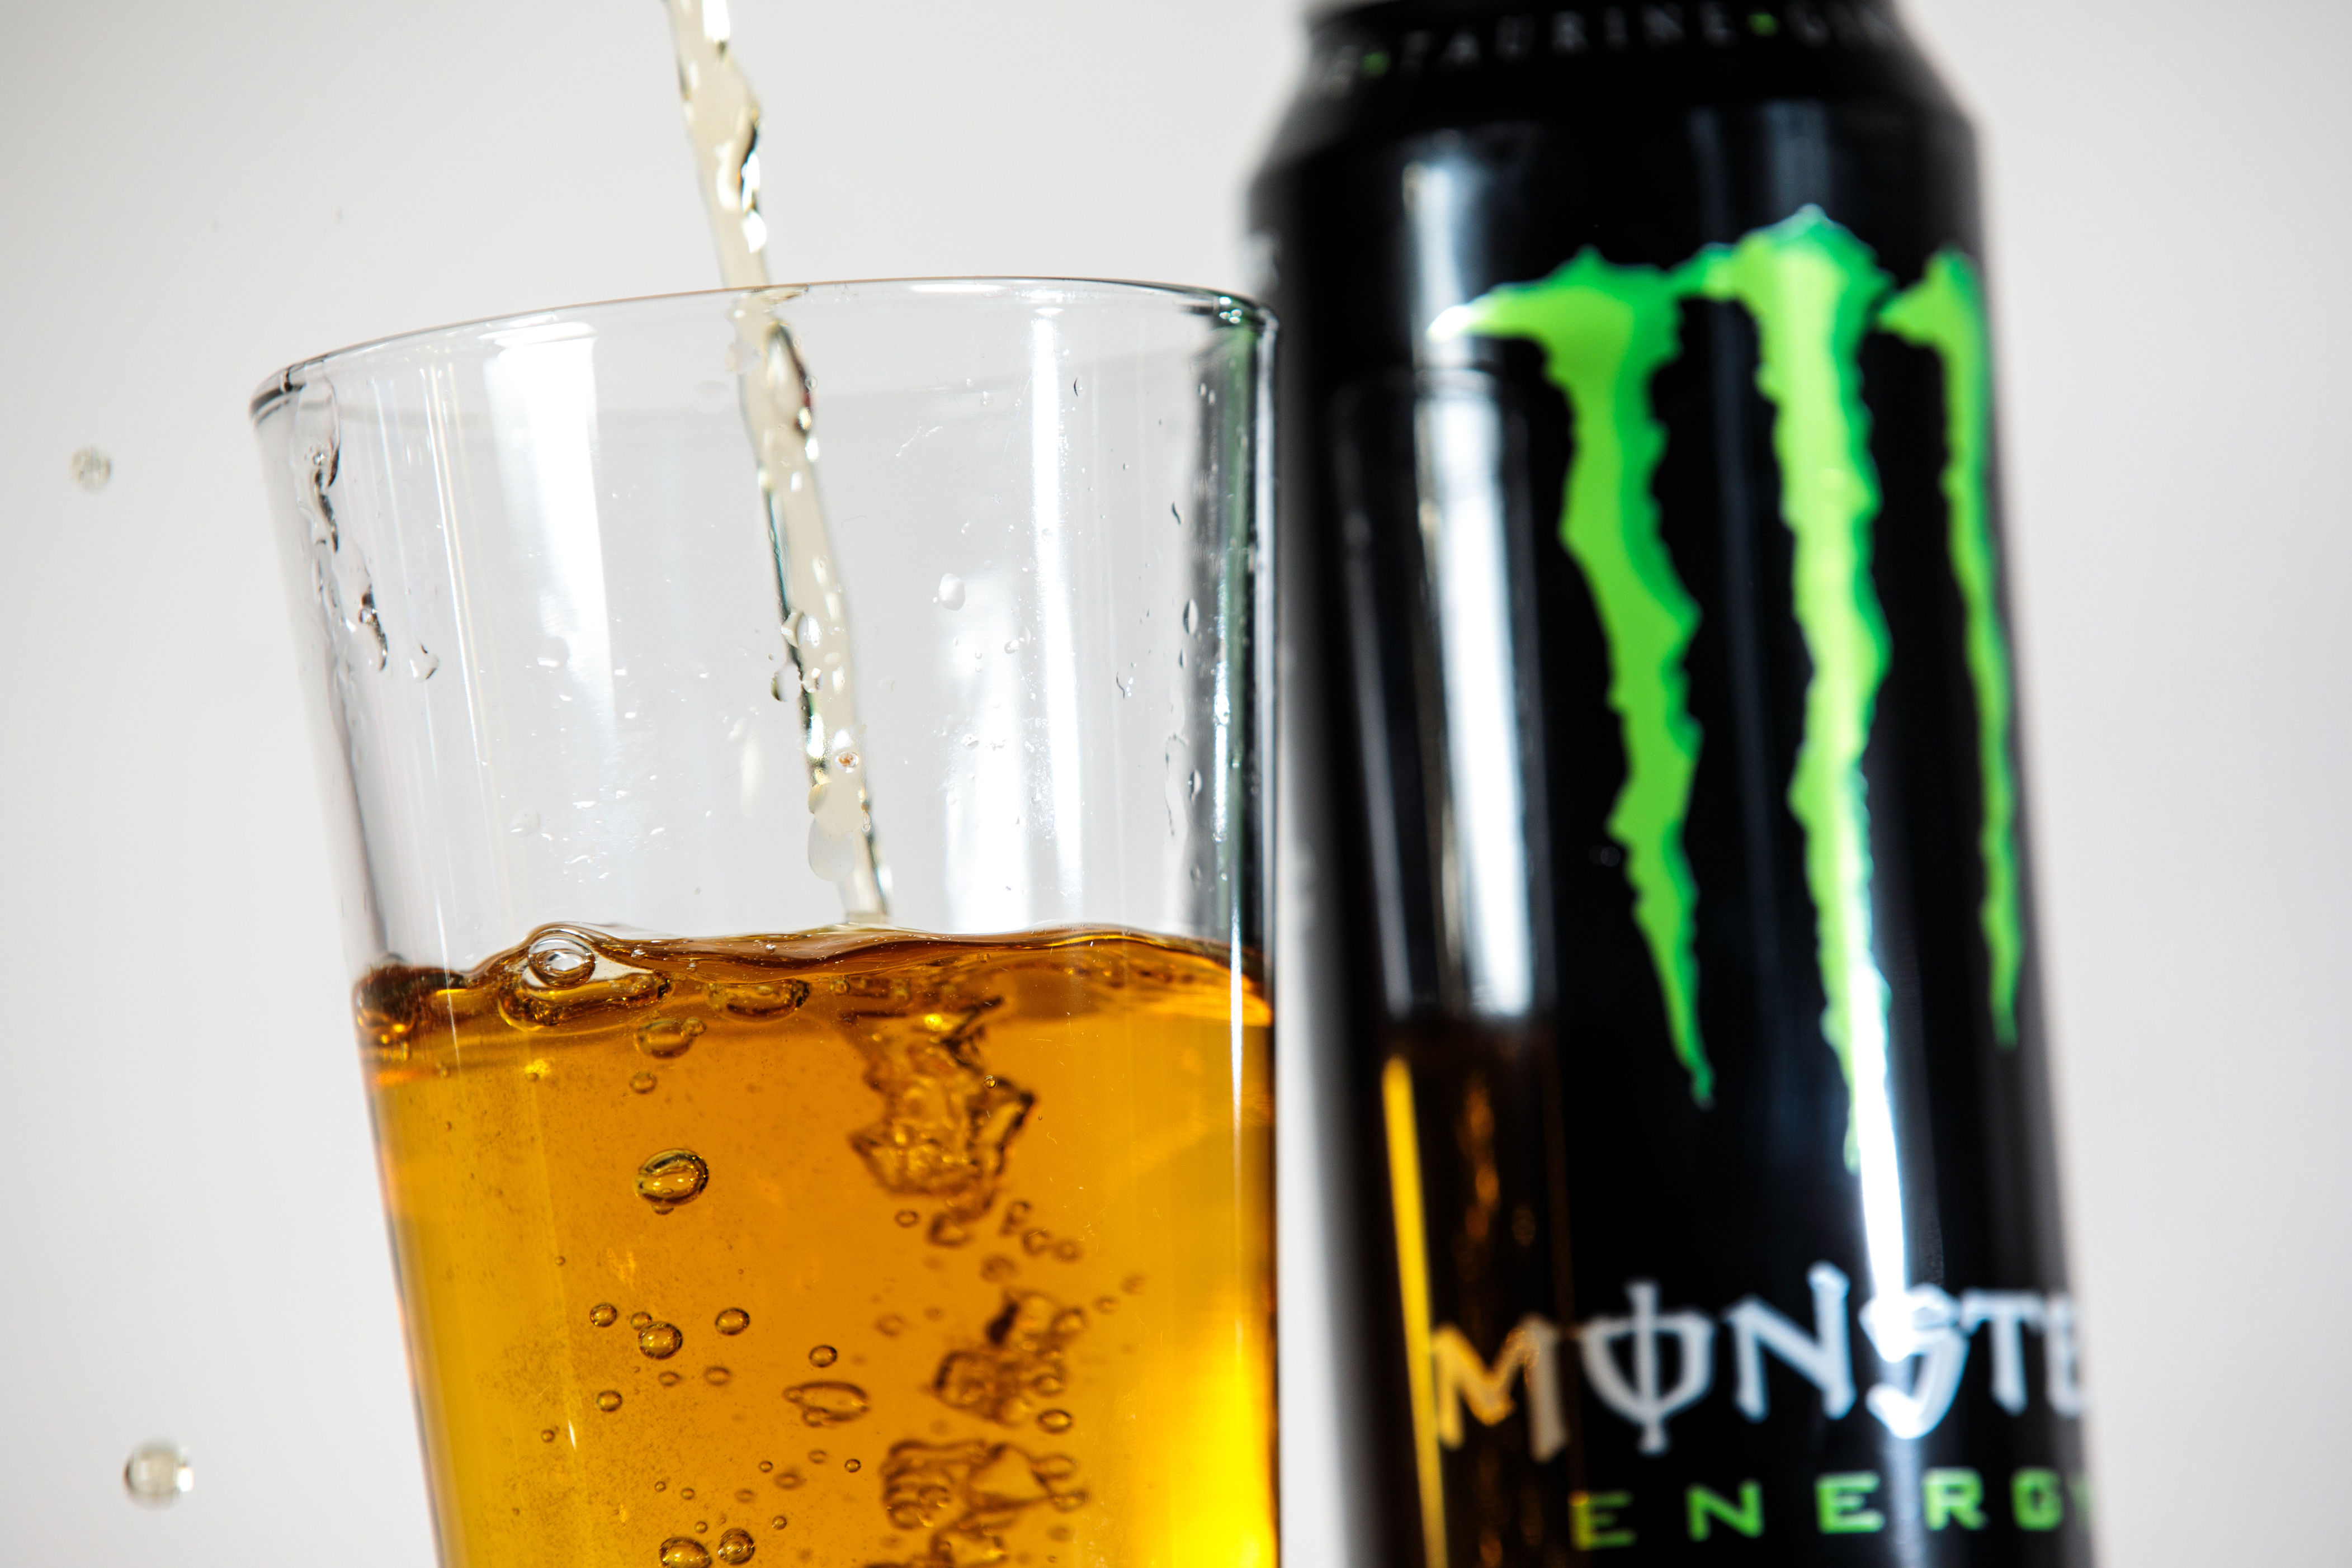 Beer monster. Prime Энергетик. Энергетические напитки в Дубае. Пивной монстр.